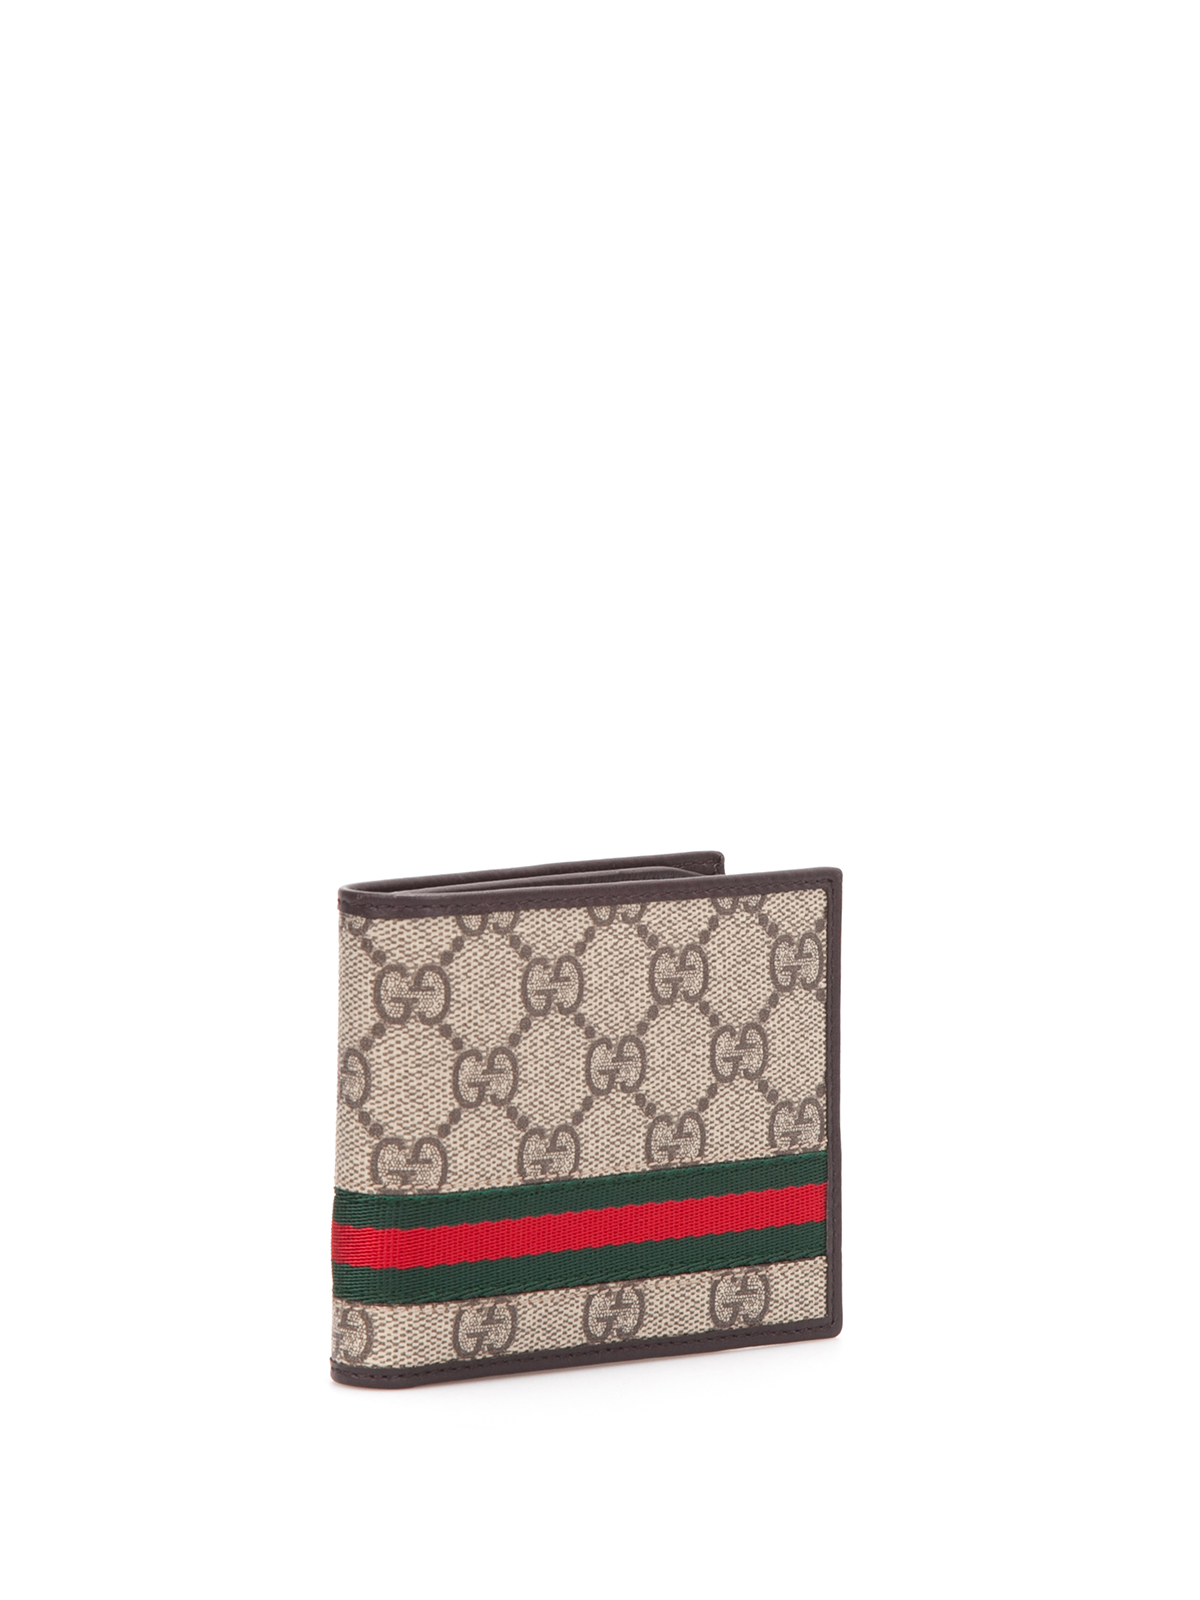 Gucci GG Supreme Bifold Wallet